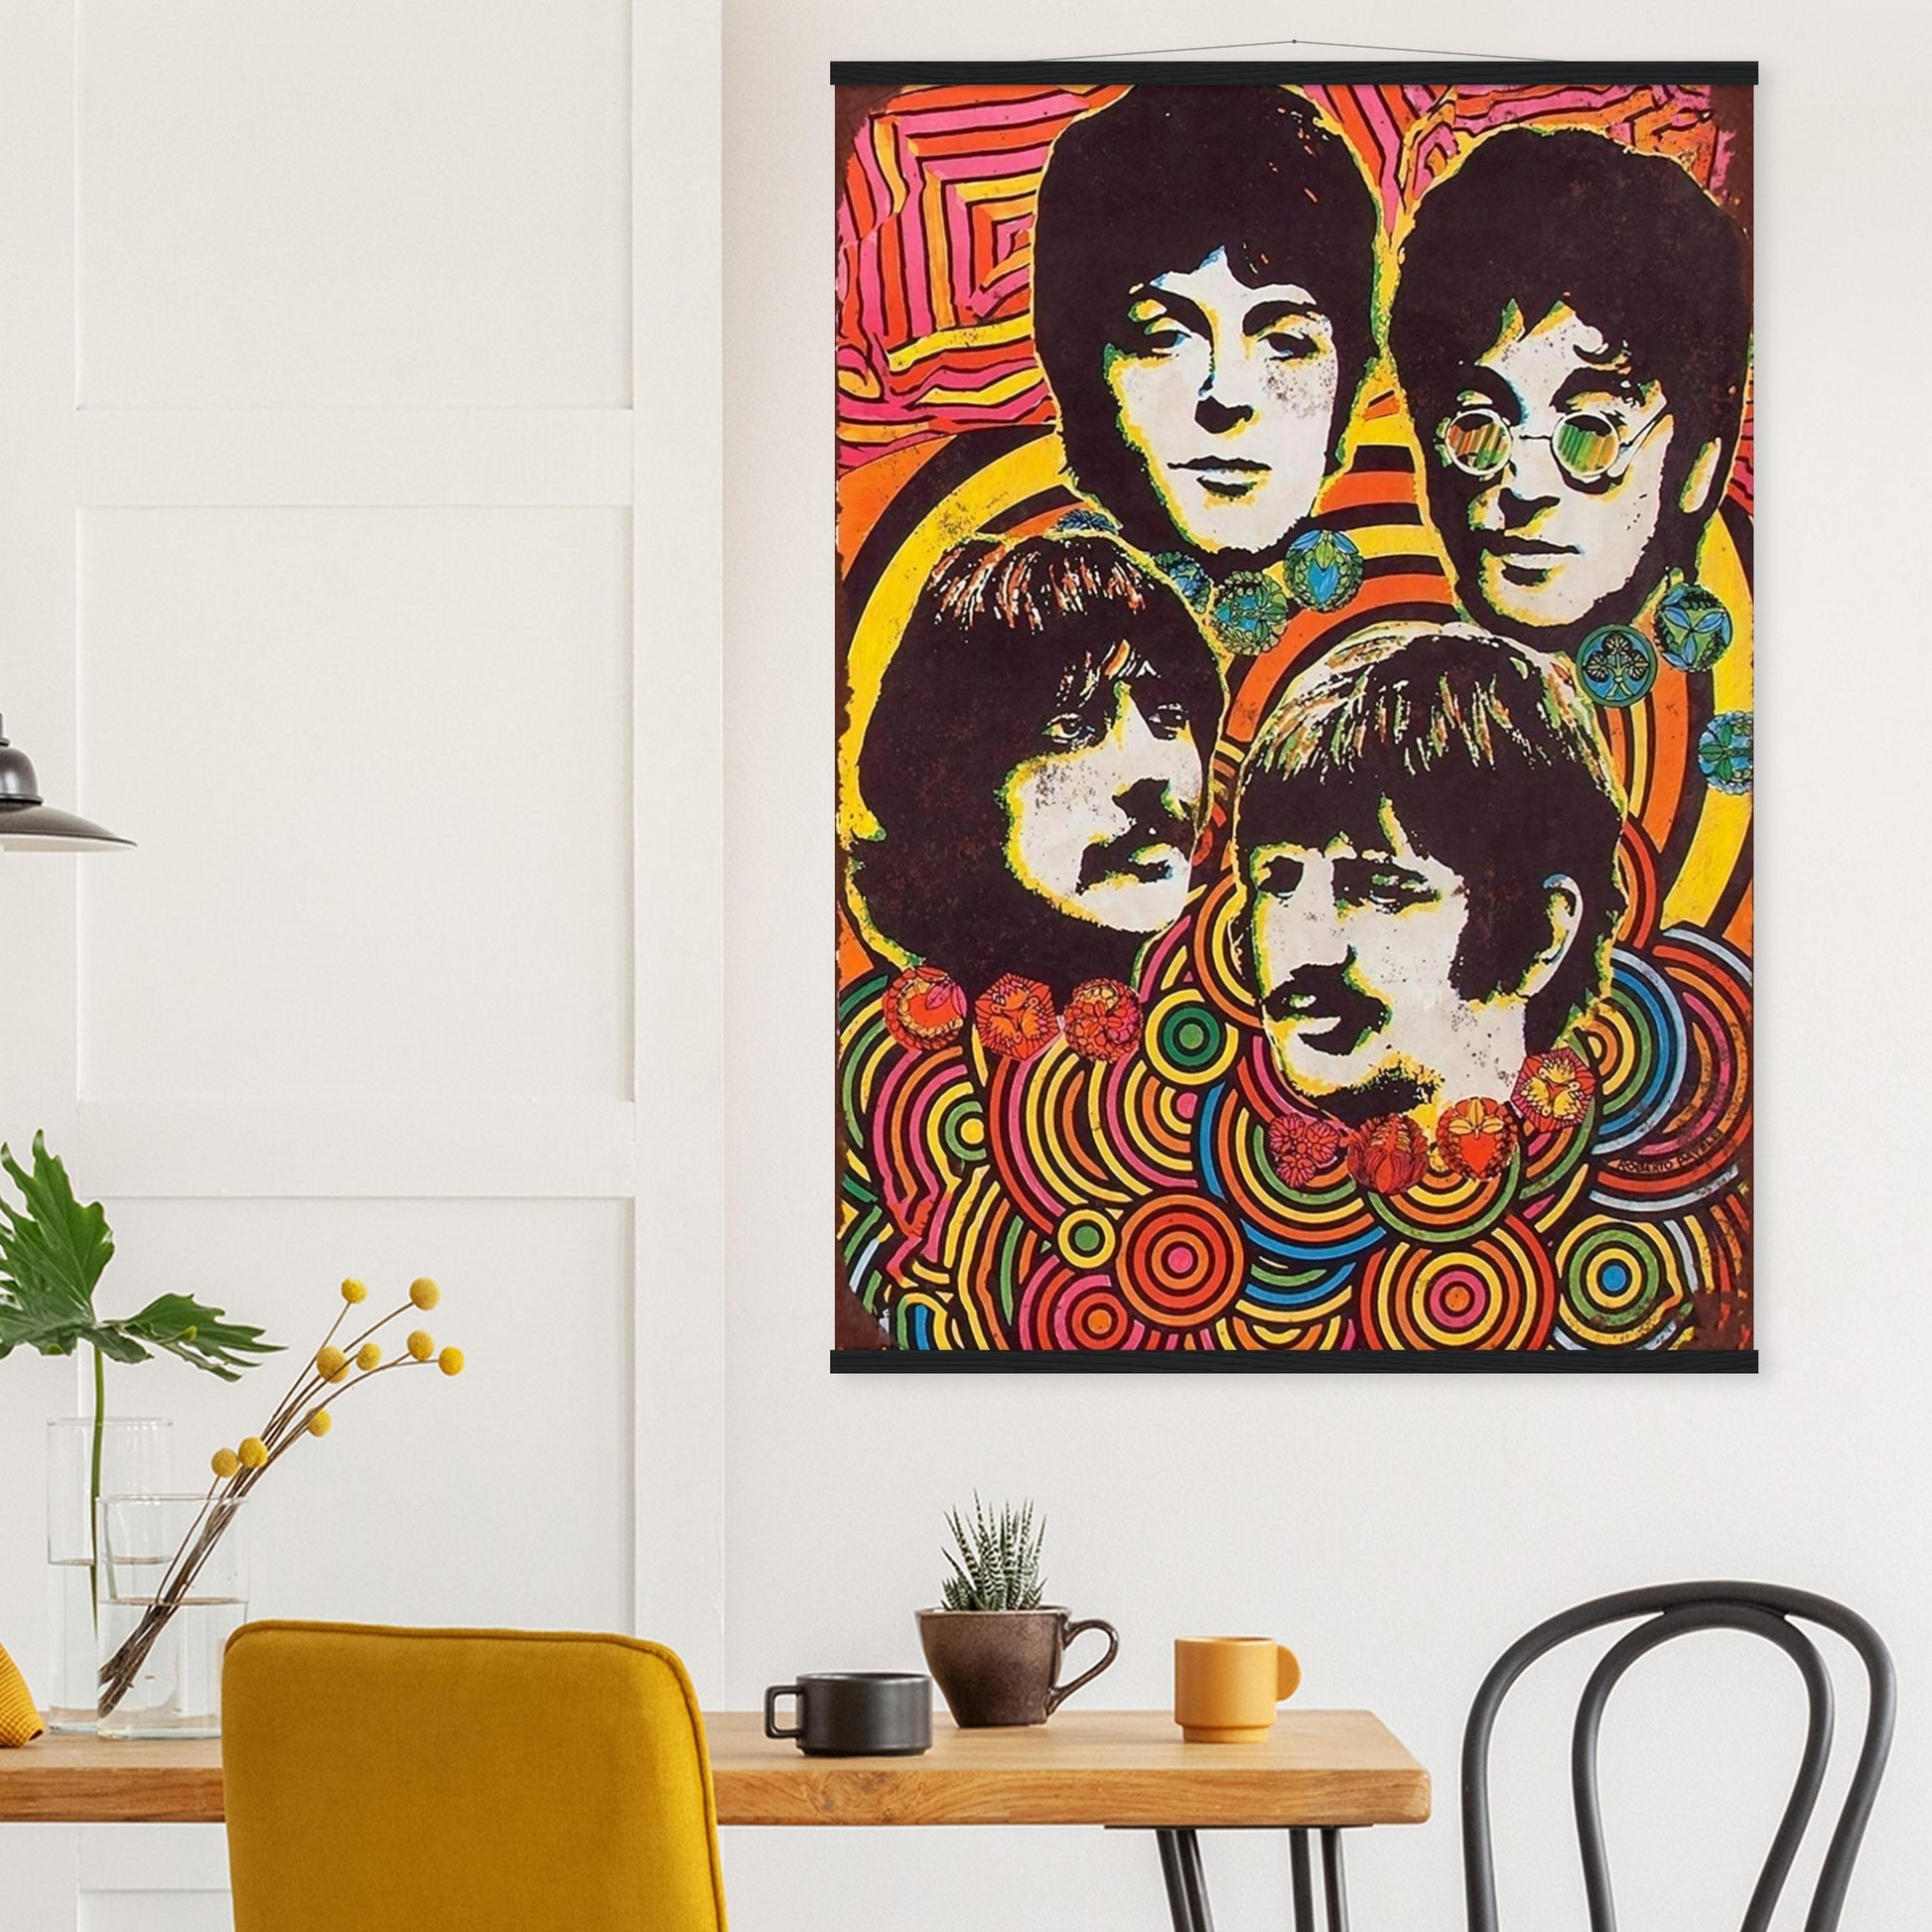 Beatles Vintage Poster Reprint on Premium Matte Paper - Posterify